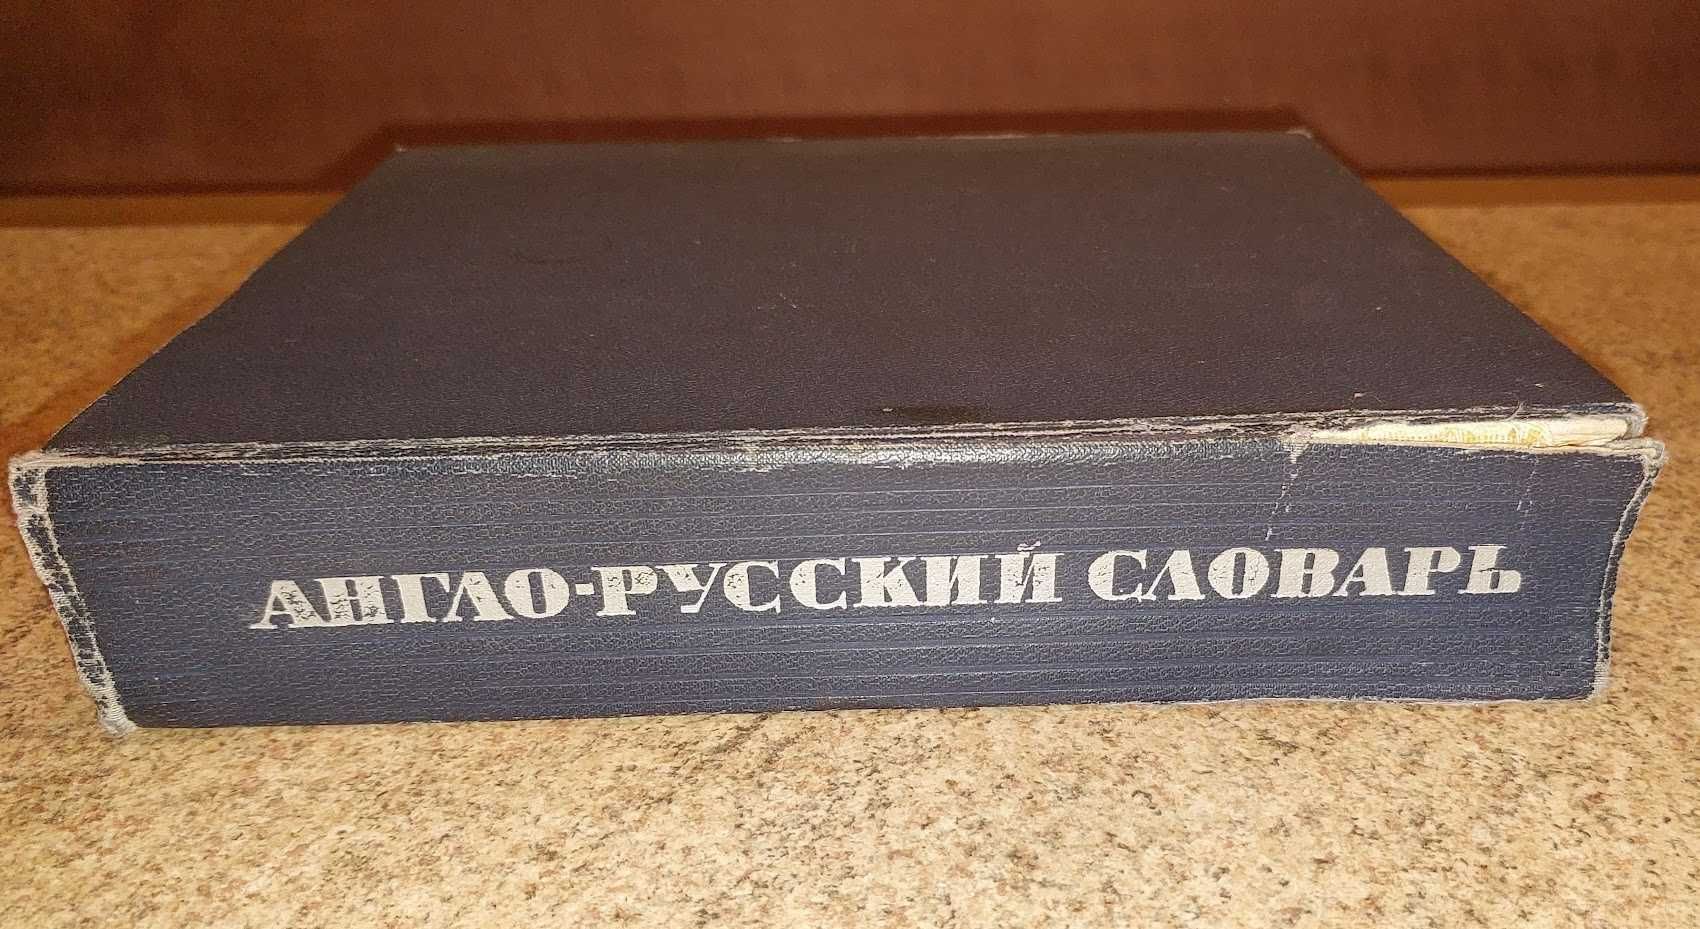 Англо-Русский словарь.